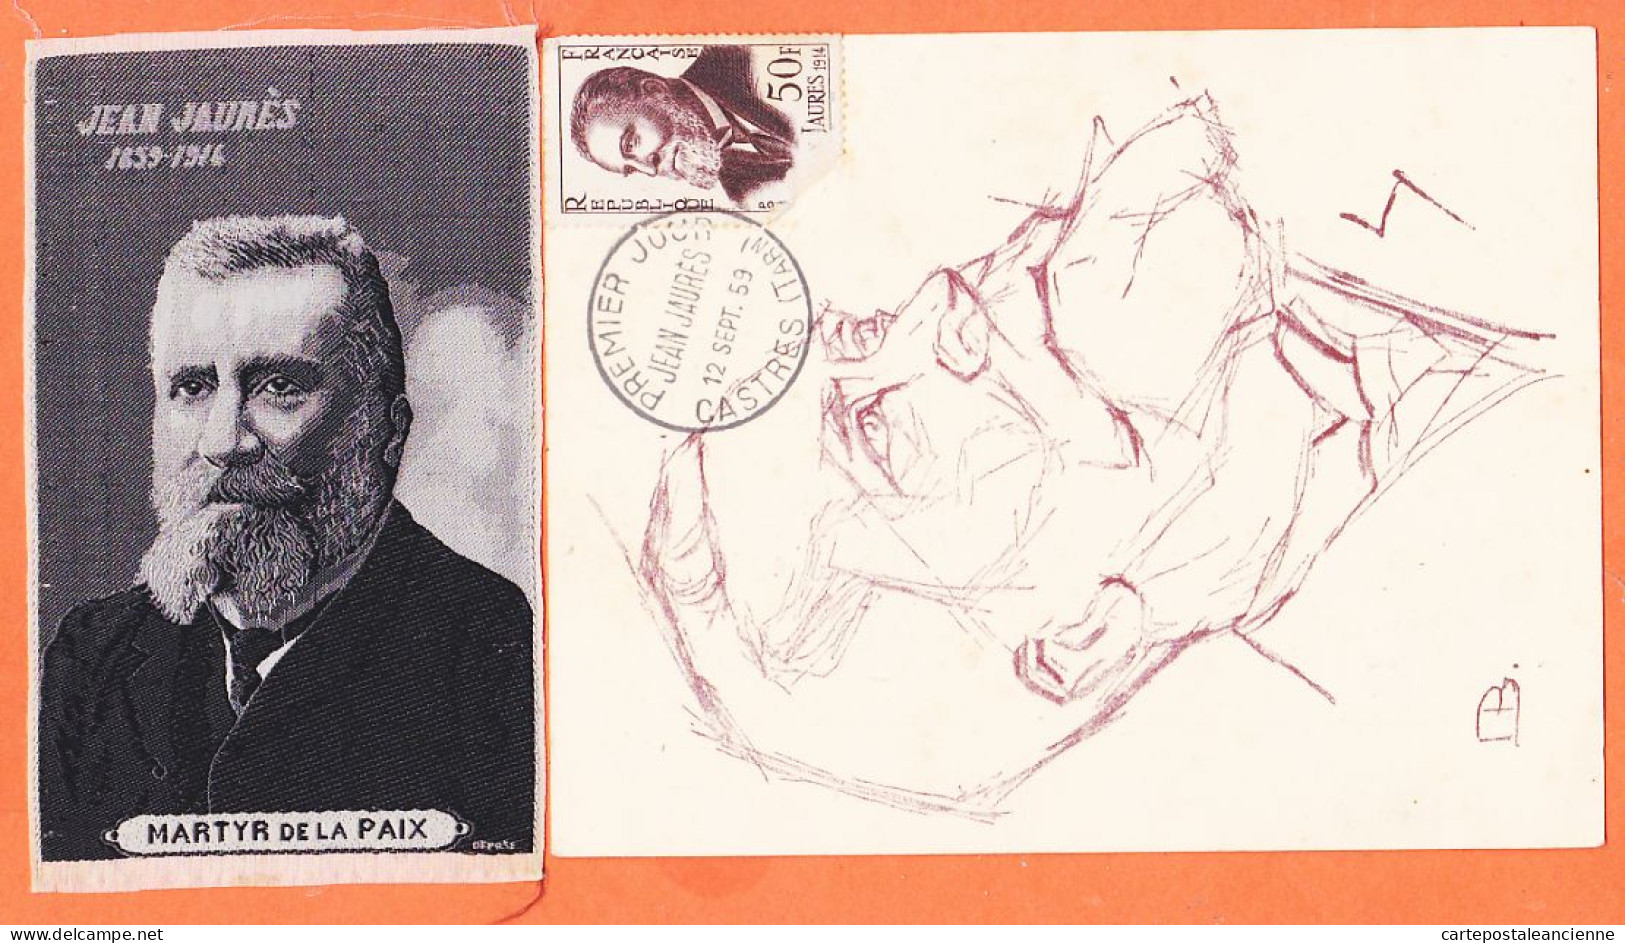 00360 ● JAURES Député SOCIALISTE Assassiné à PARIS 1859-1914 Apôtre PAIX + Portrait Tissé SOIE MARTYR 6,5x11-S.F.IO - Ereignisse